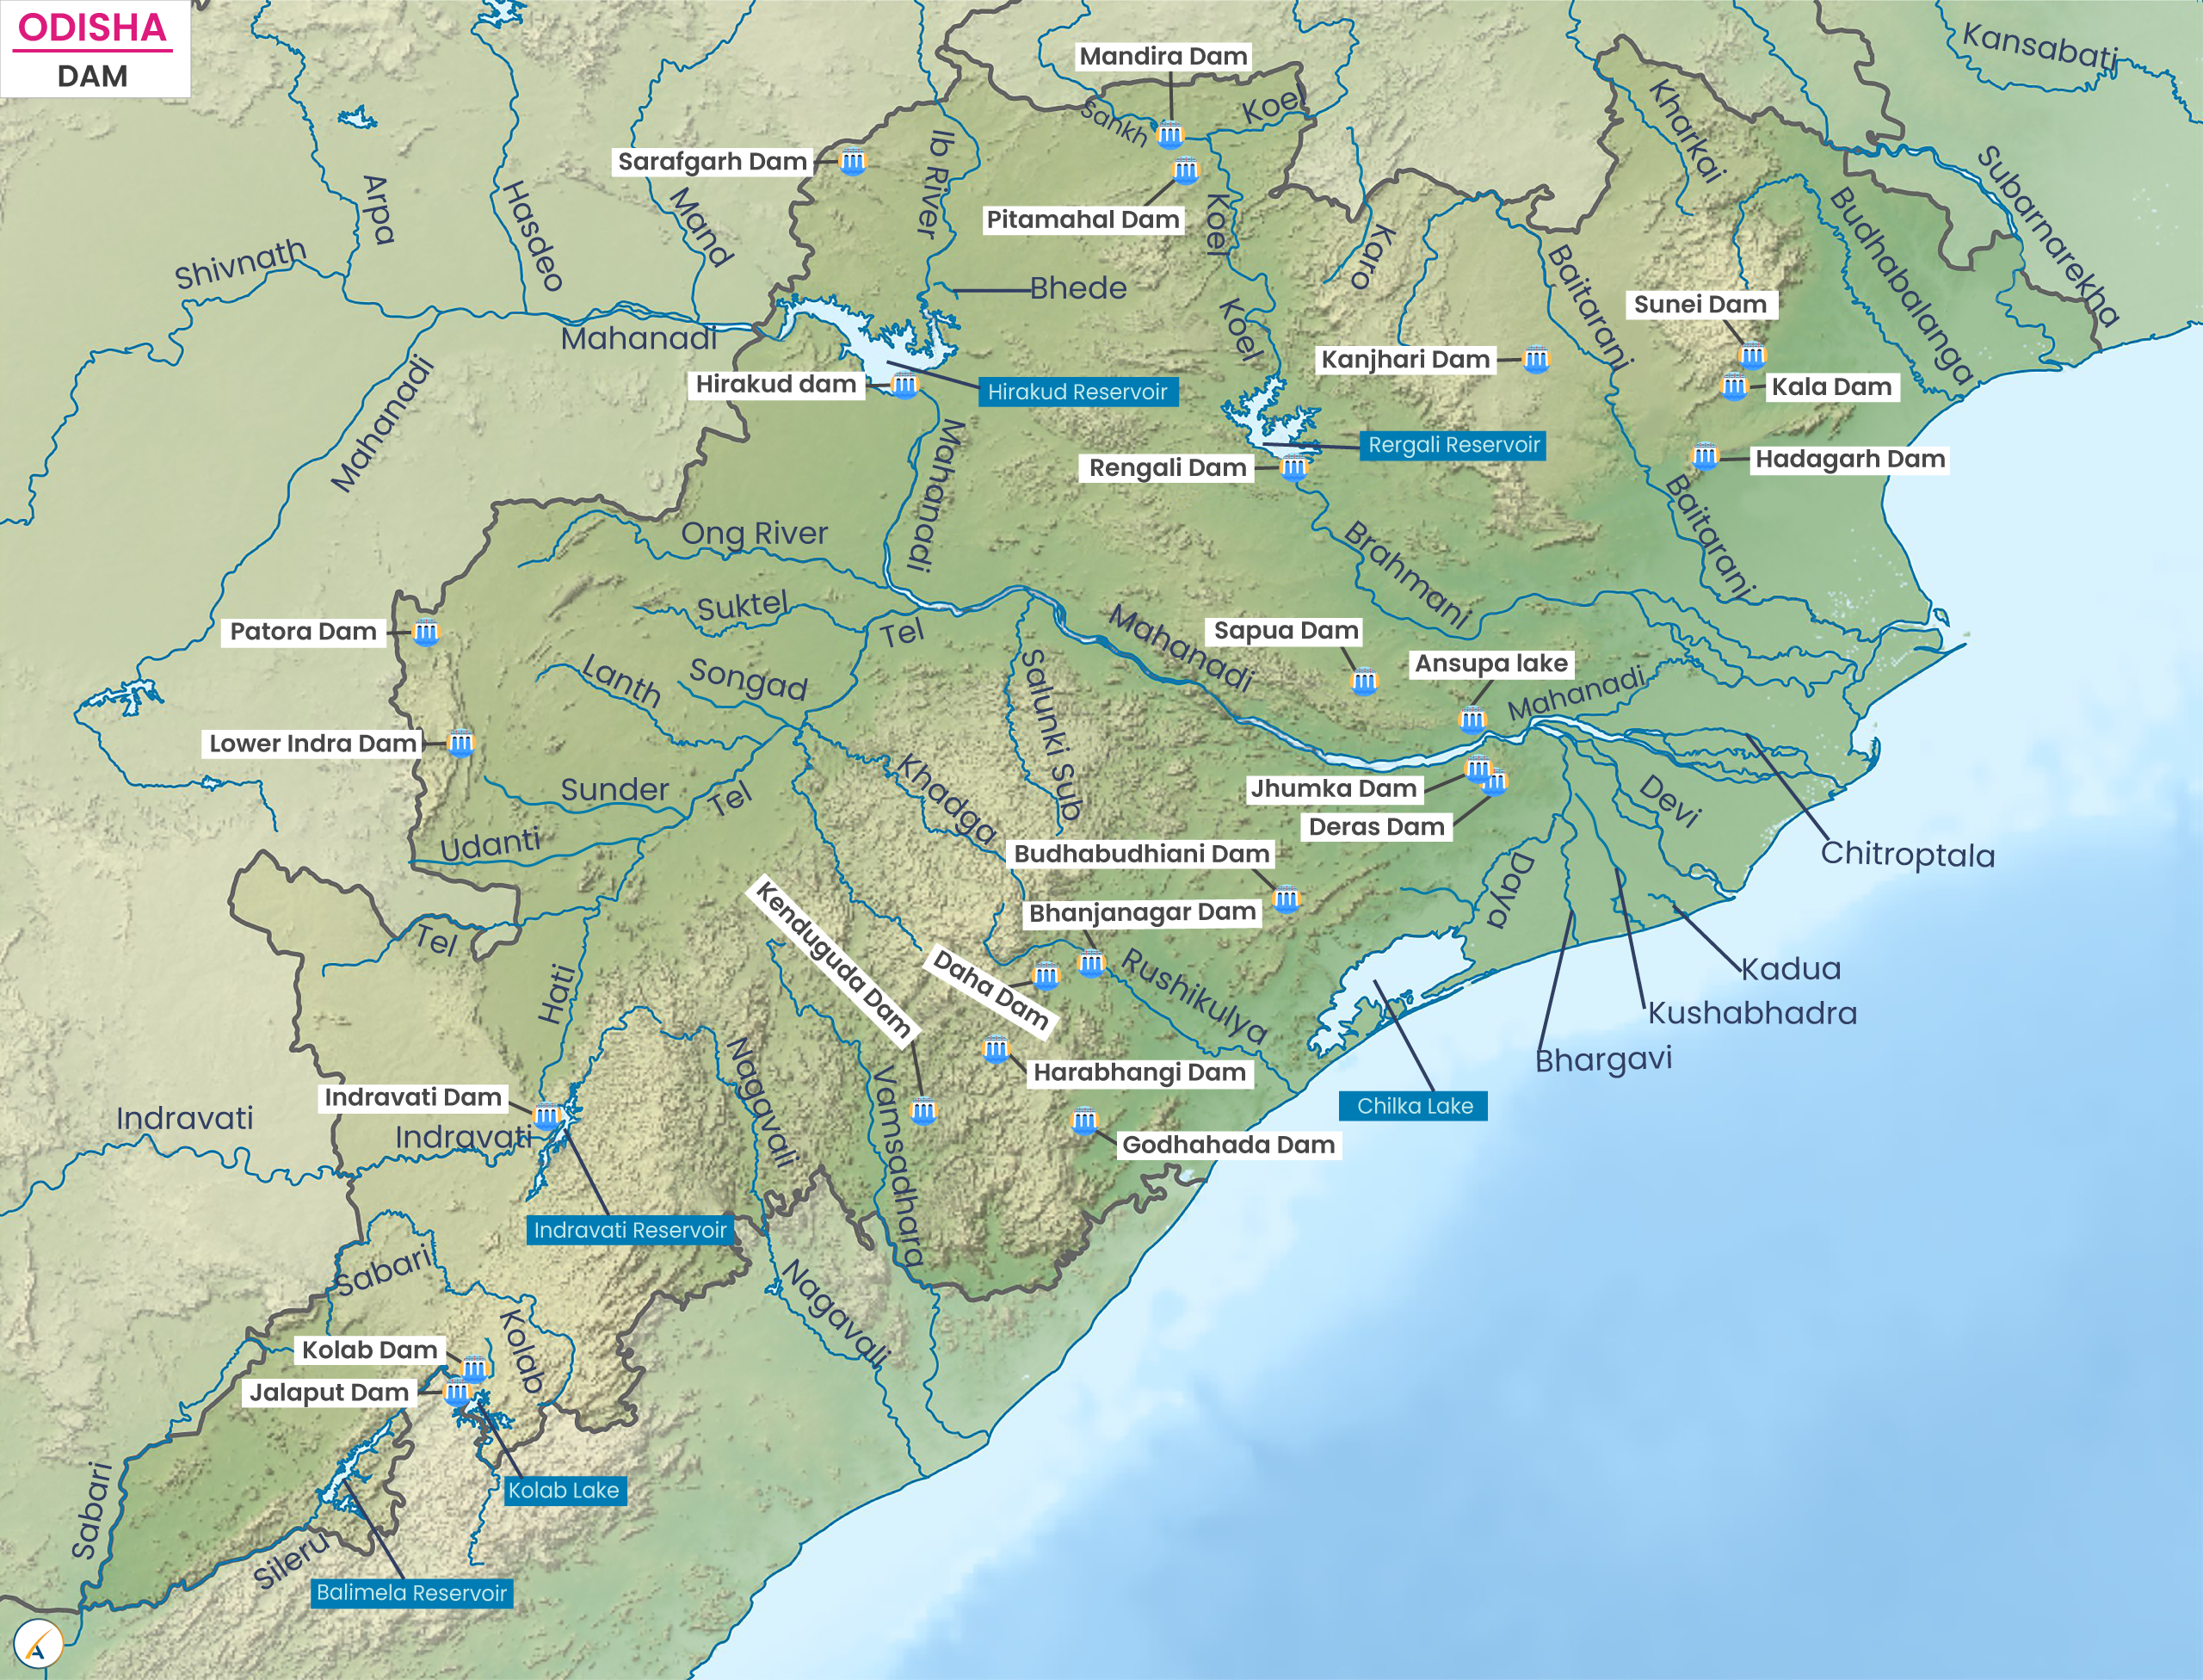 Major Dams in Odisha (Map)